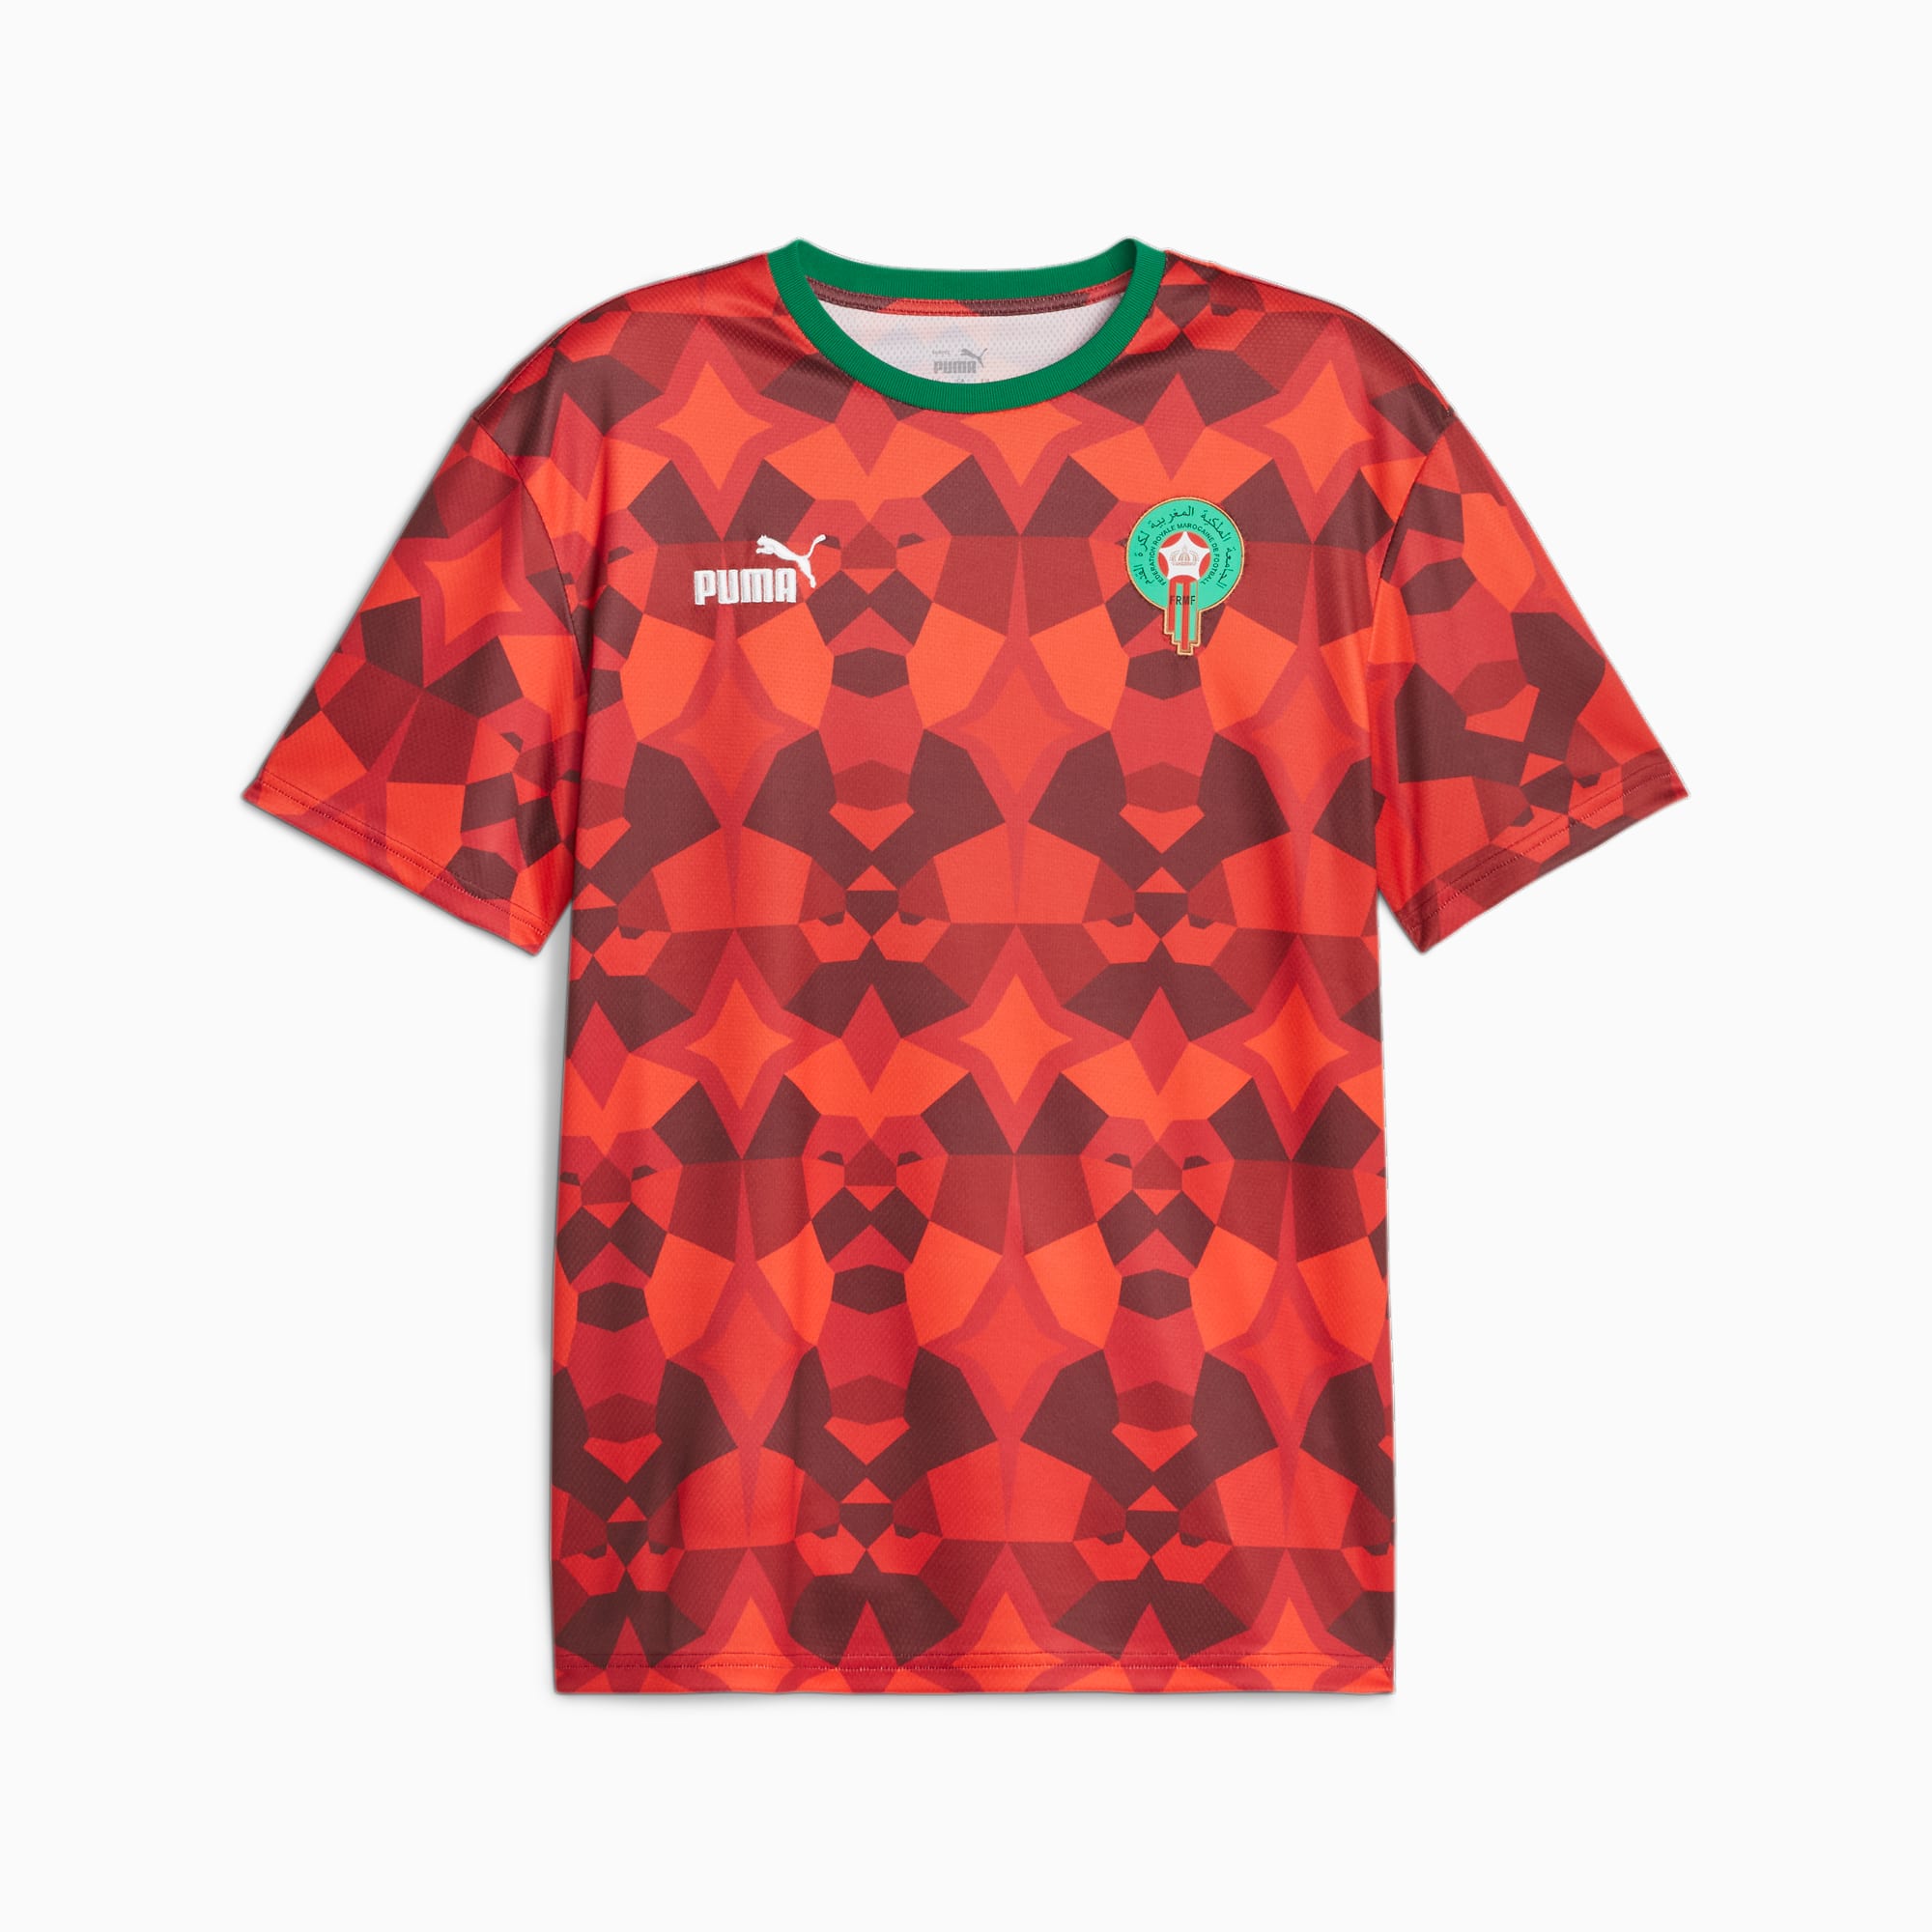 PUMA Marokko FtblCulture T-Shirt Für Herren, Rot, Größe: 3XL, Kleidung